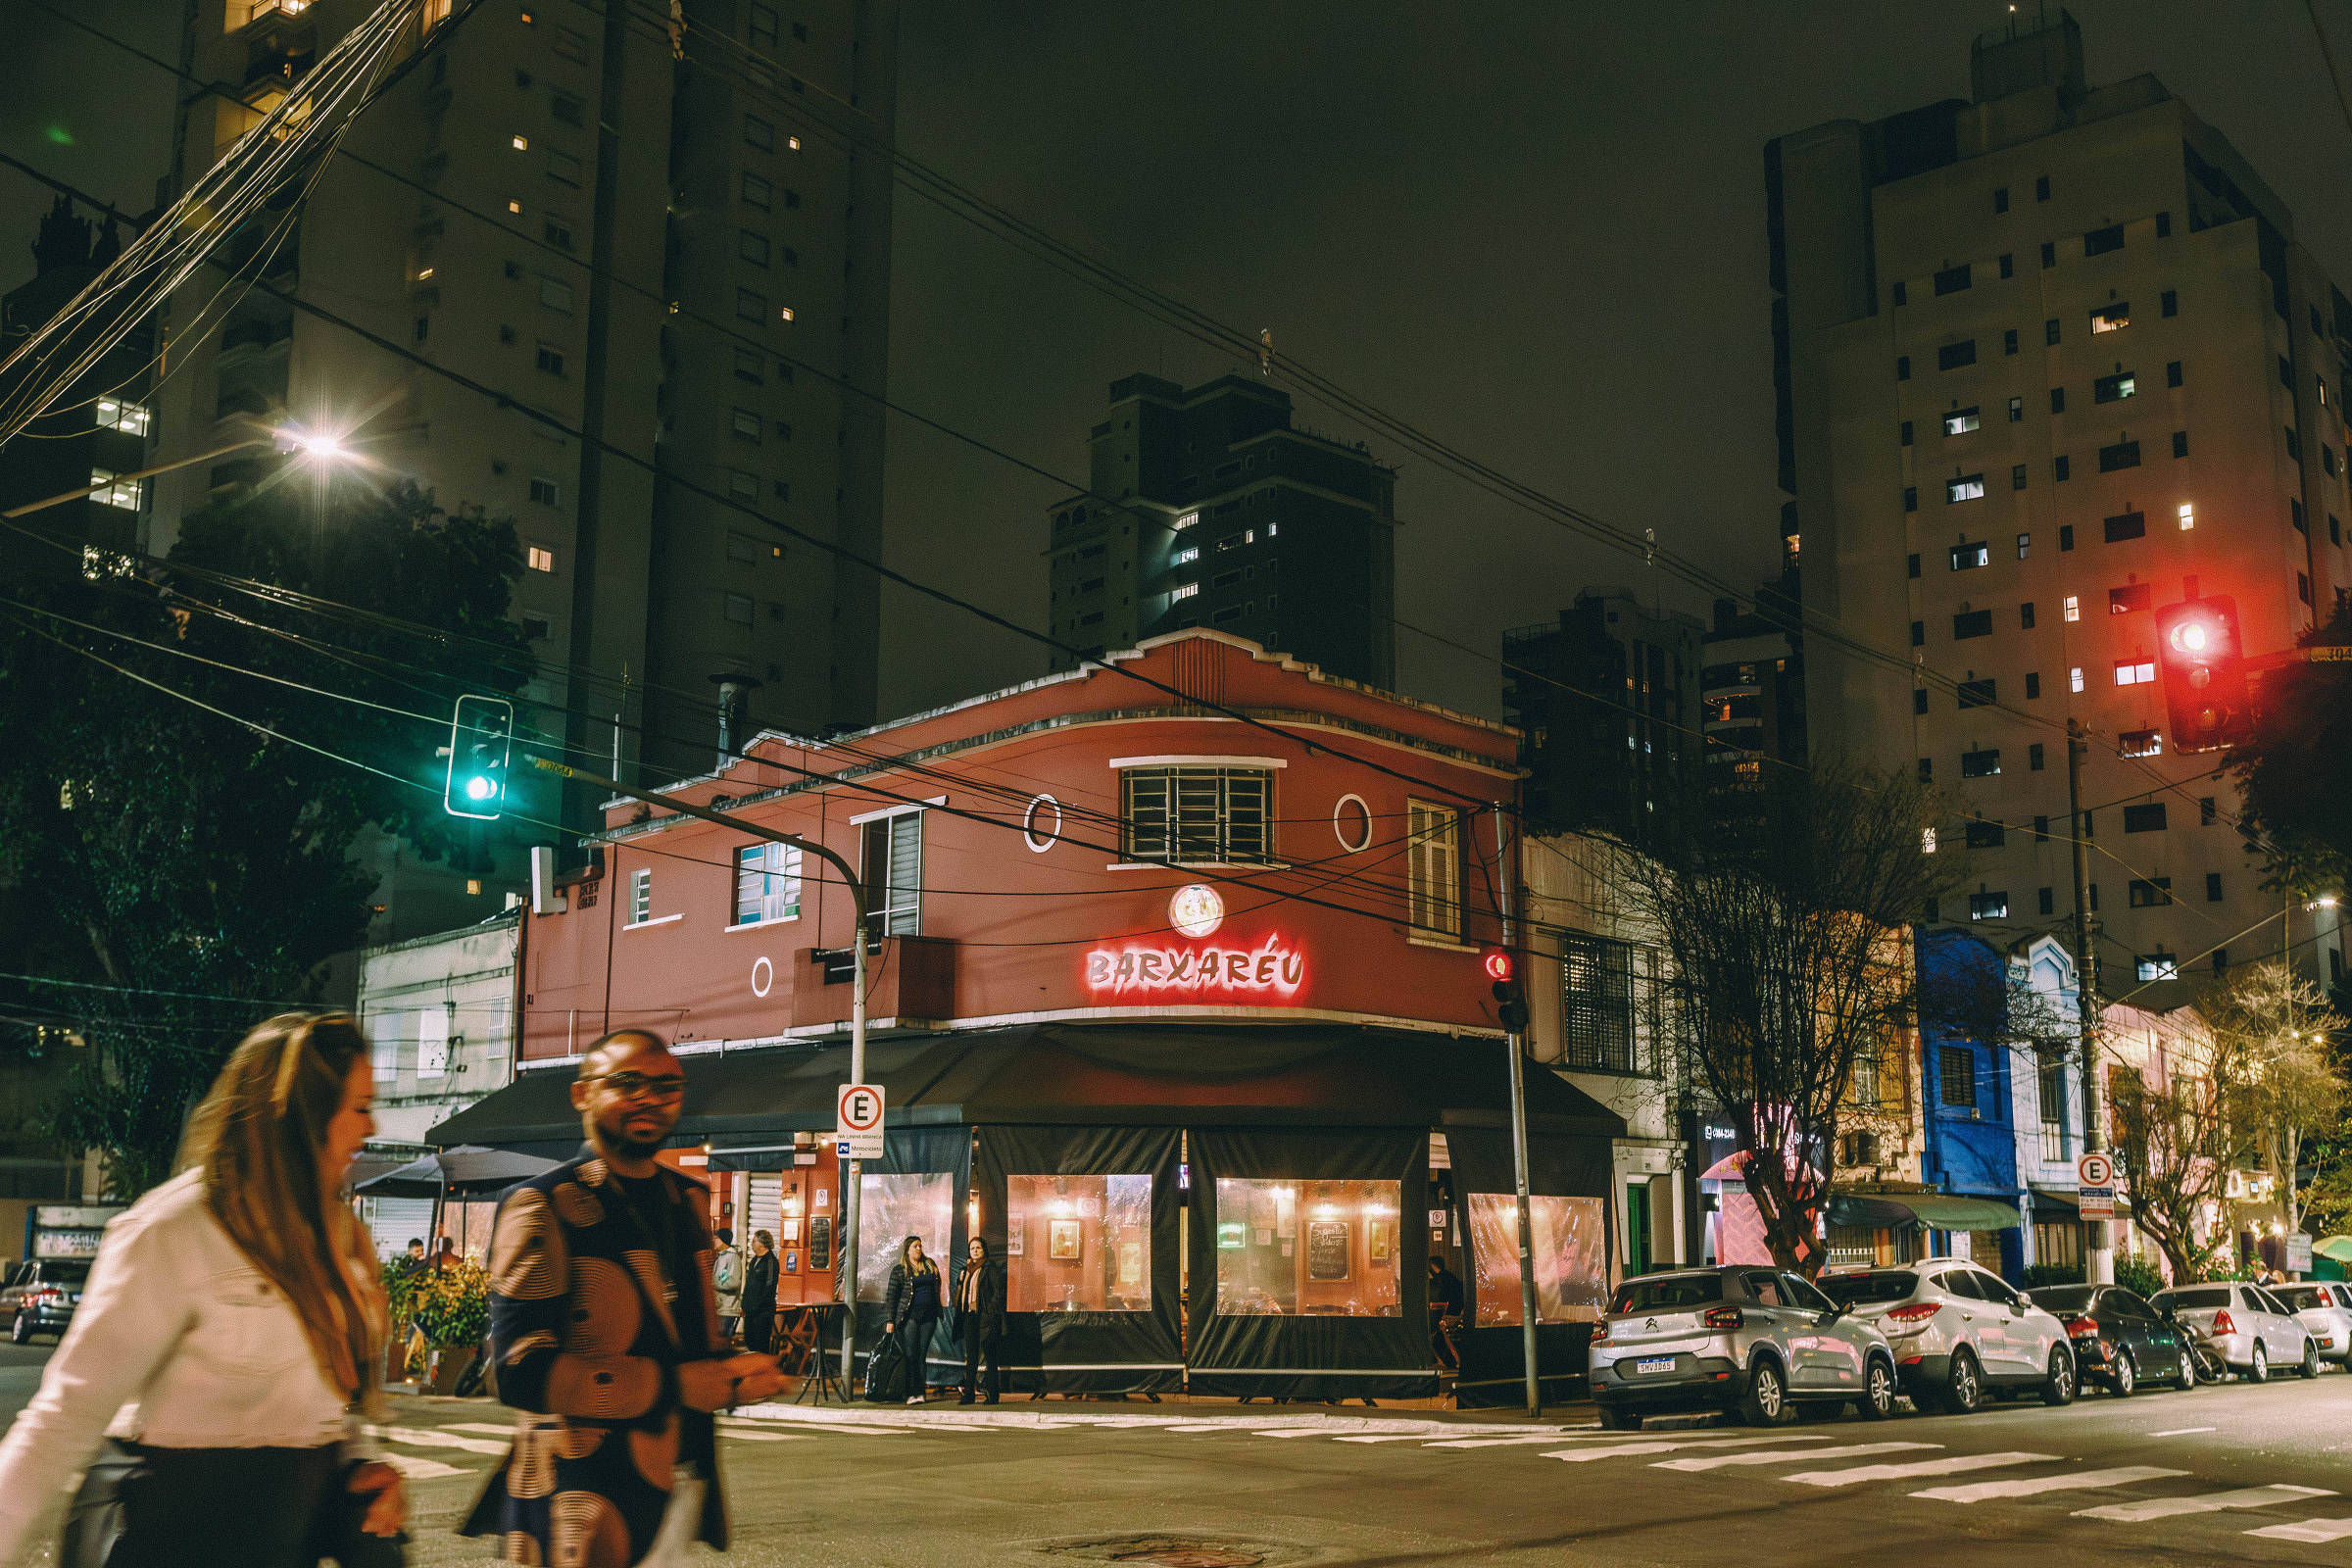 Os 9 melhores bares de São Paulo para jogar sinuca - Viajar pelo Mundo